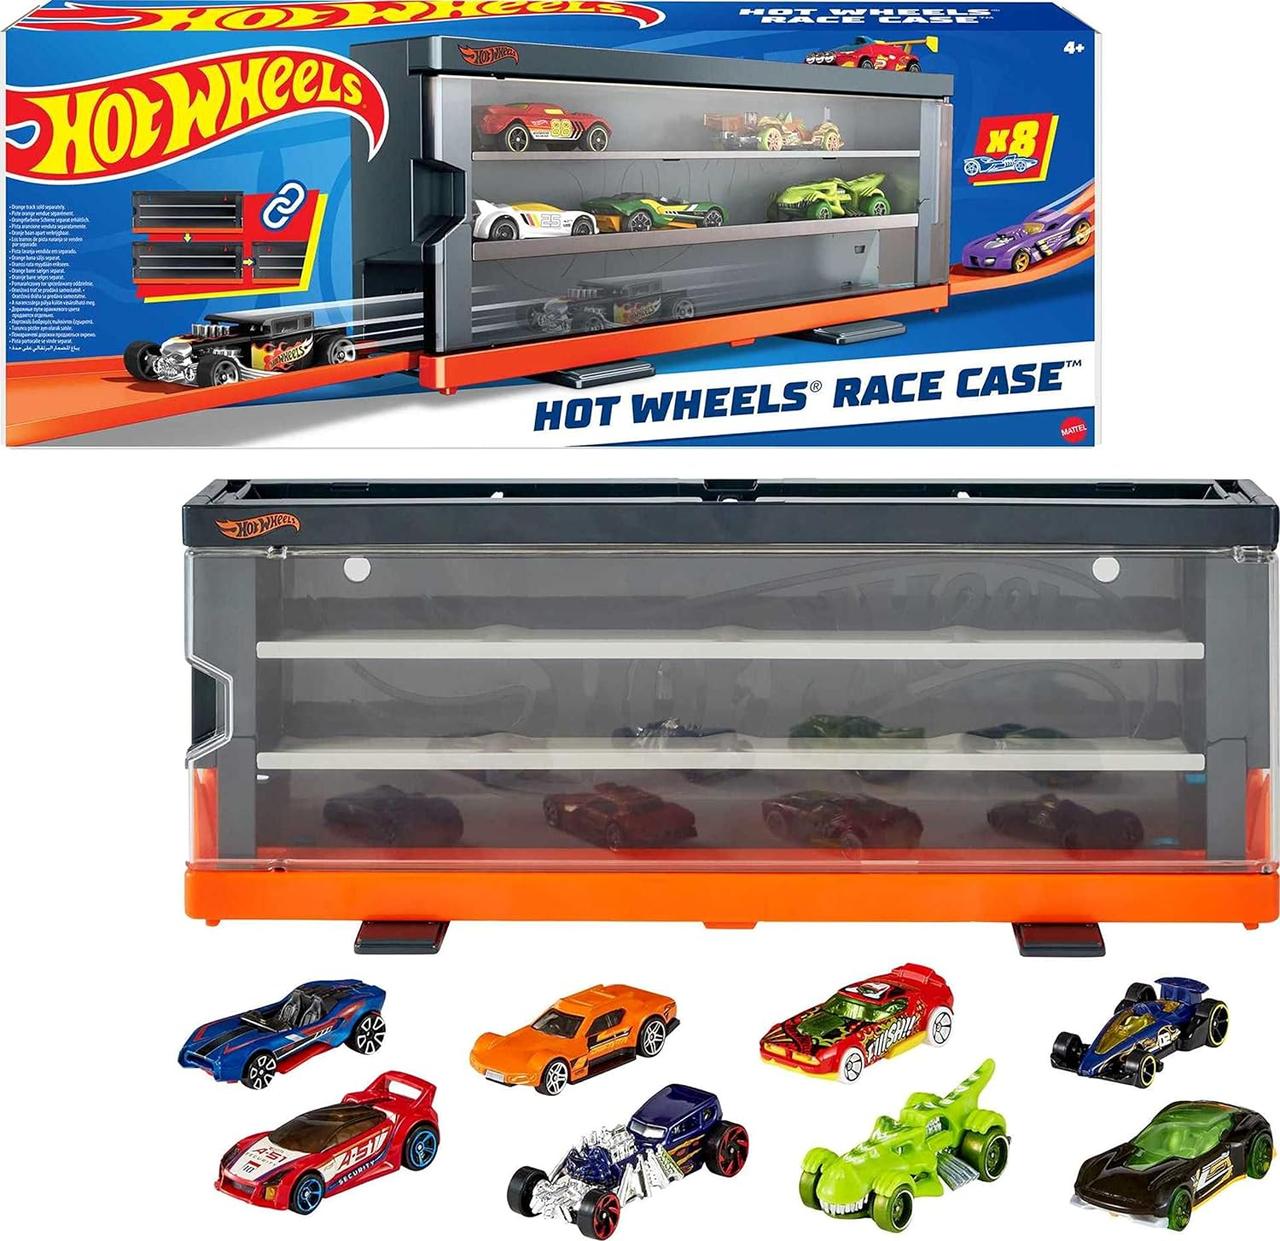 Прозорий кейс дисплей + 8 машинок Хот Вілс. Hot Wheels Race Case with 8 Toy Cars. Інтерактивний контейнер